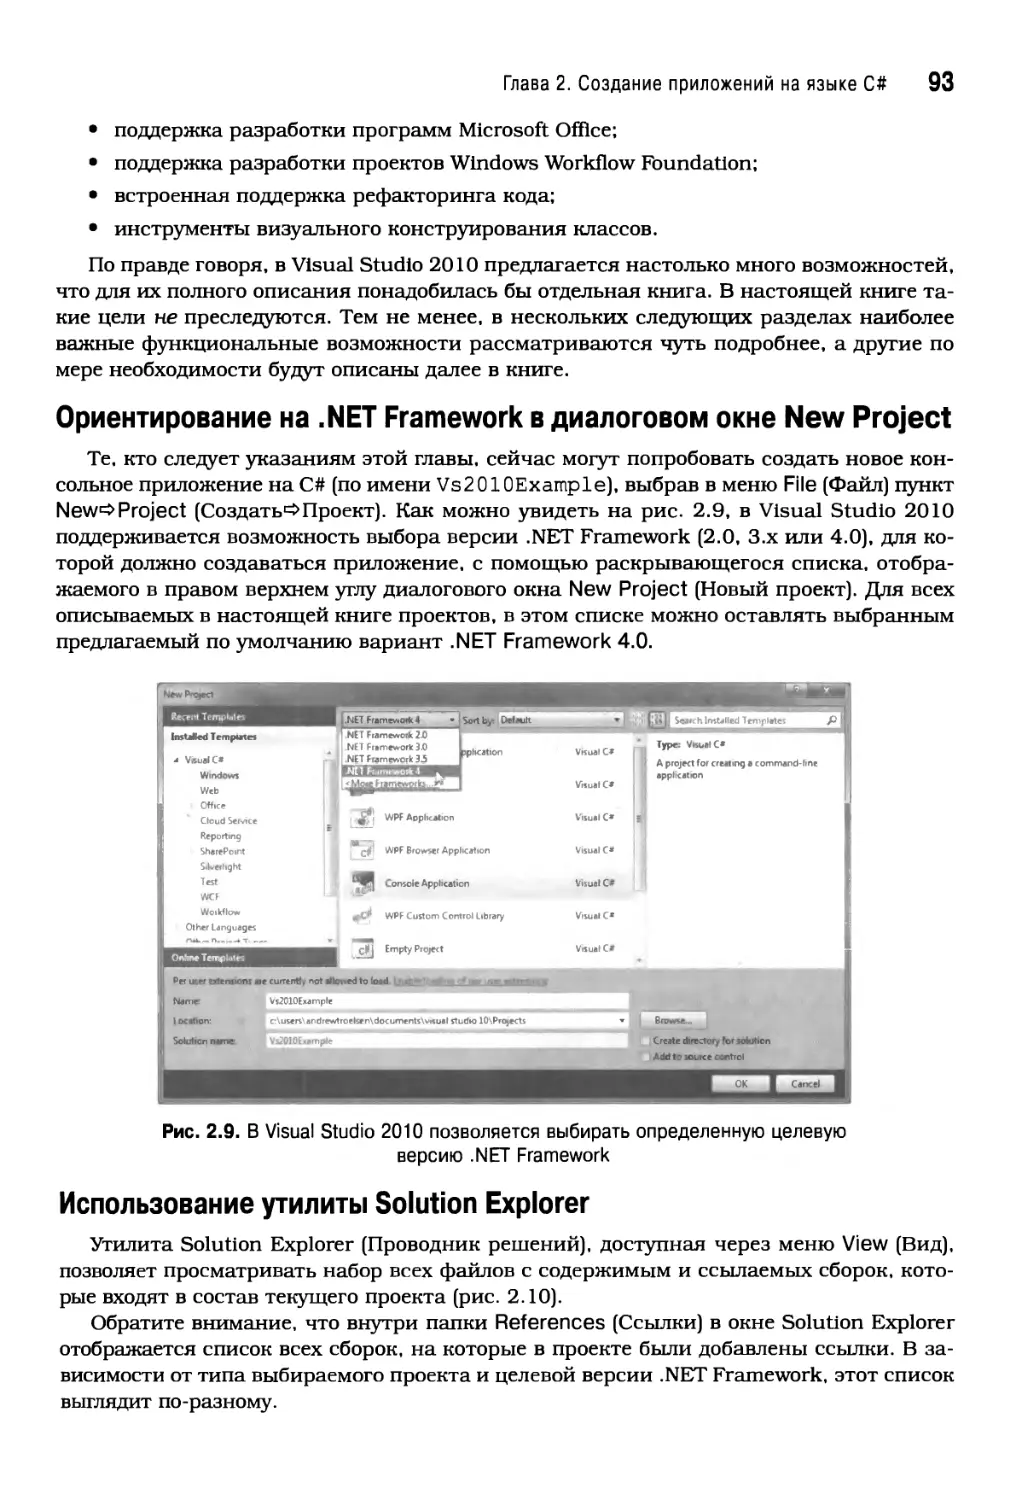 Ориентирование на .NET Framework в диалоговом окне New Project
Использование утилиты Solution Explorer